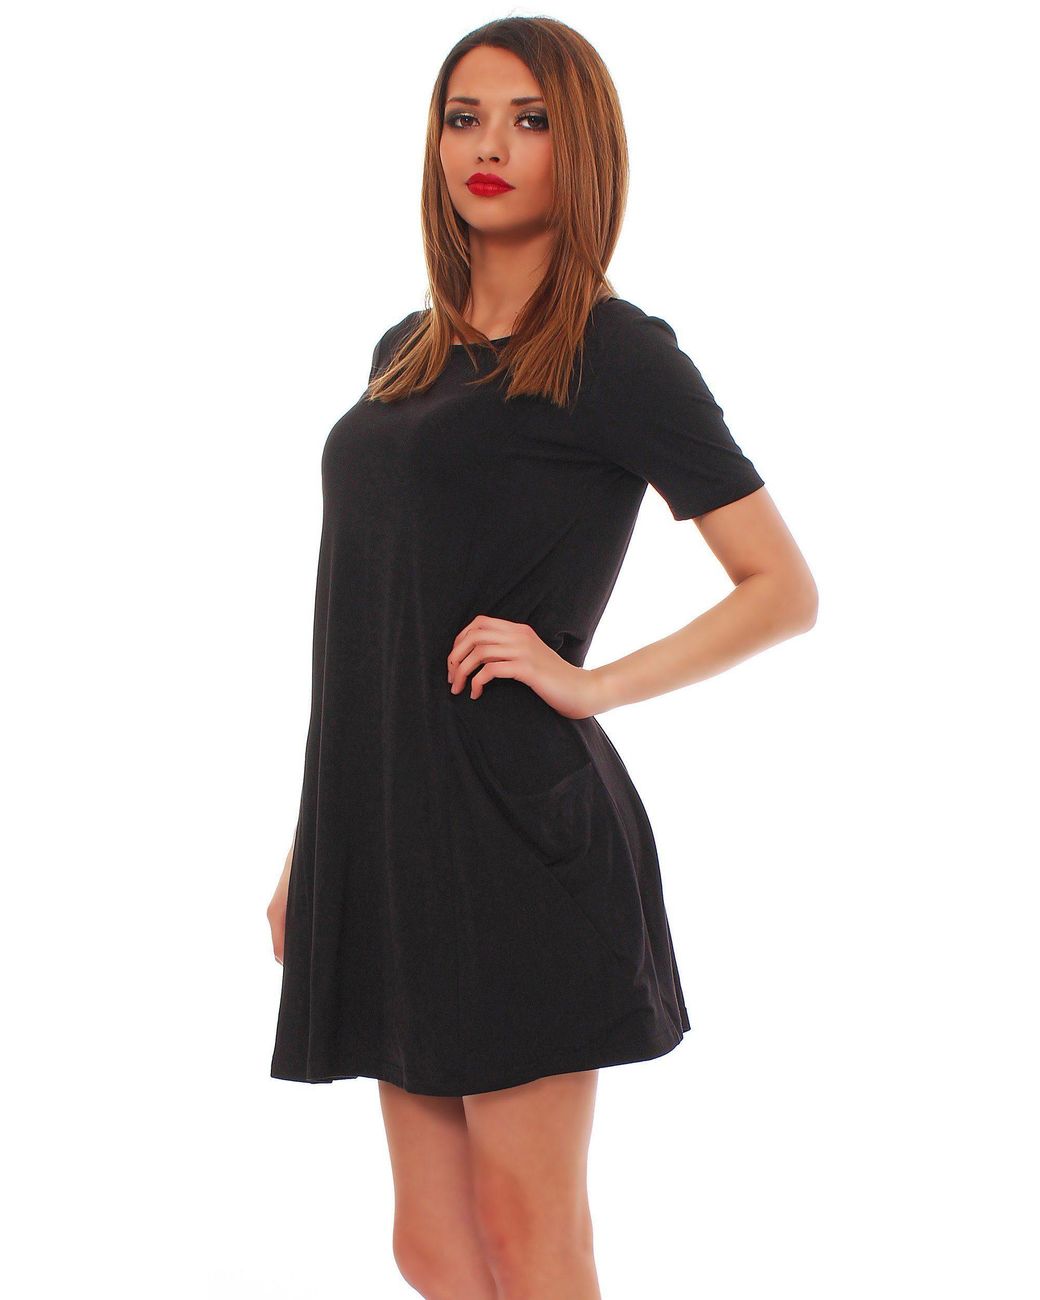 Mississhop A-Linien-Kleid Kleid Tunika Longshirt Pulli Tunika Minikleid mit  Taschen 6514 in Schwarz | Lyst DE